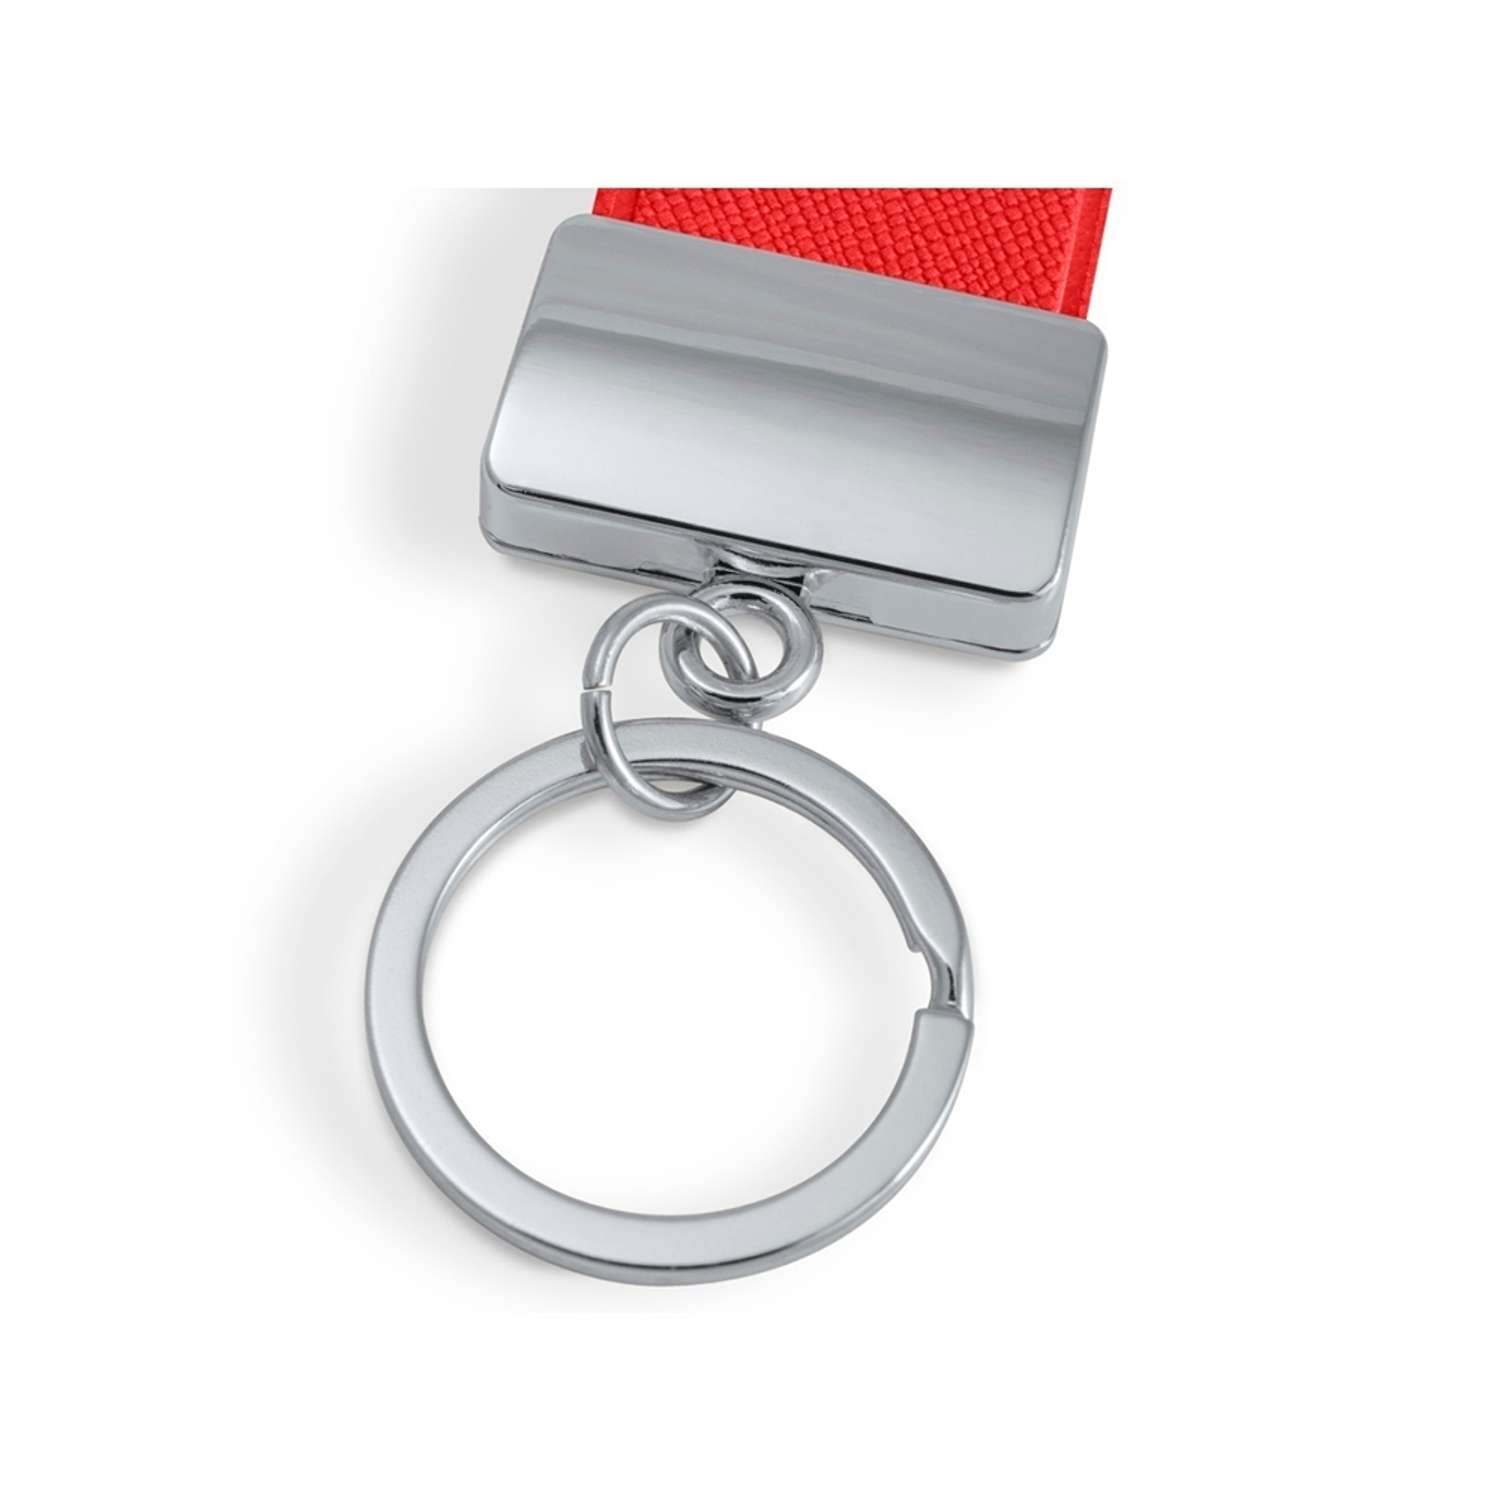 Брелок Flexpocket красного цвета для ключей или на сумку - фото 2